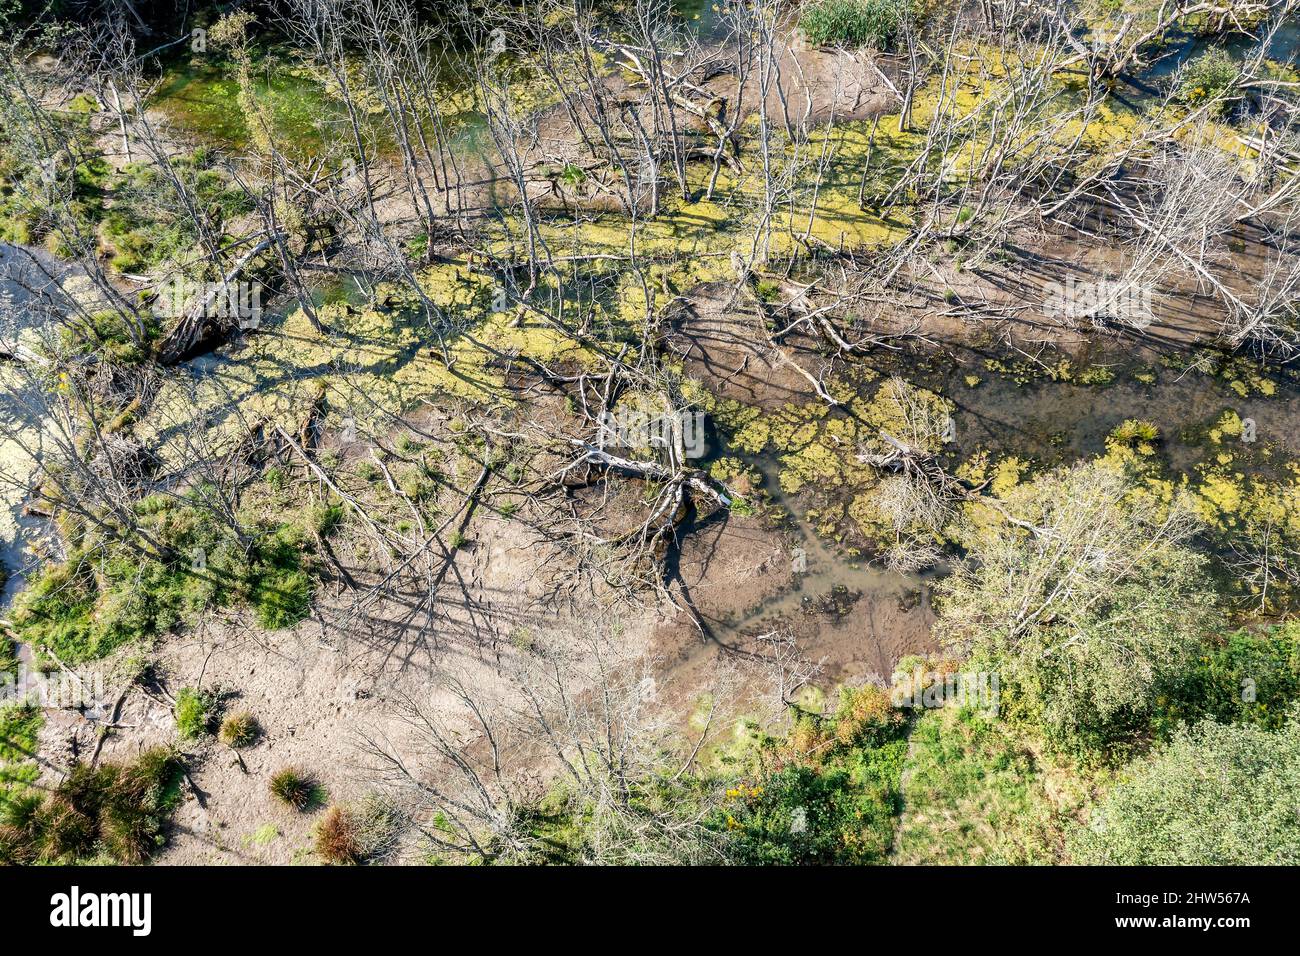 Waldsumpf. Sumpfige Wildnis Landschaft mit gefallenen trockenen Bäumen. Draufsicht Luftaufnahme. Stockfoto